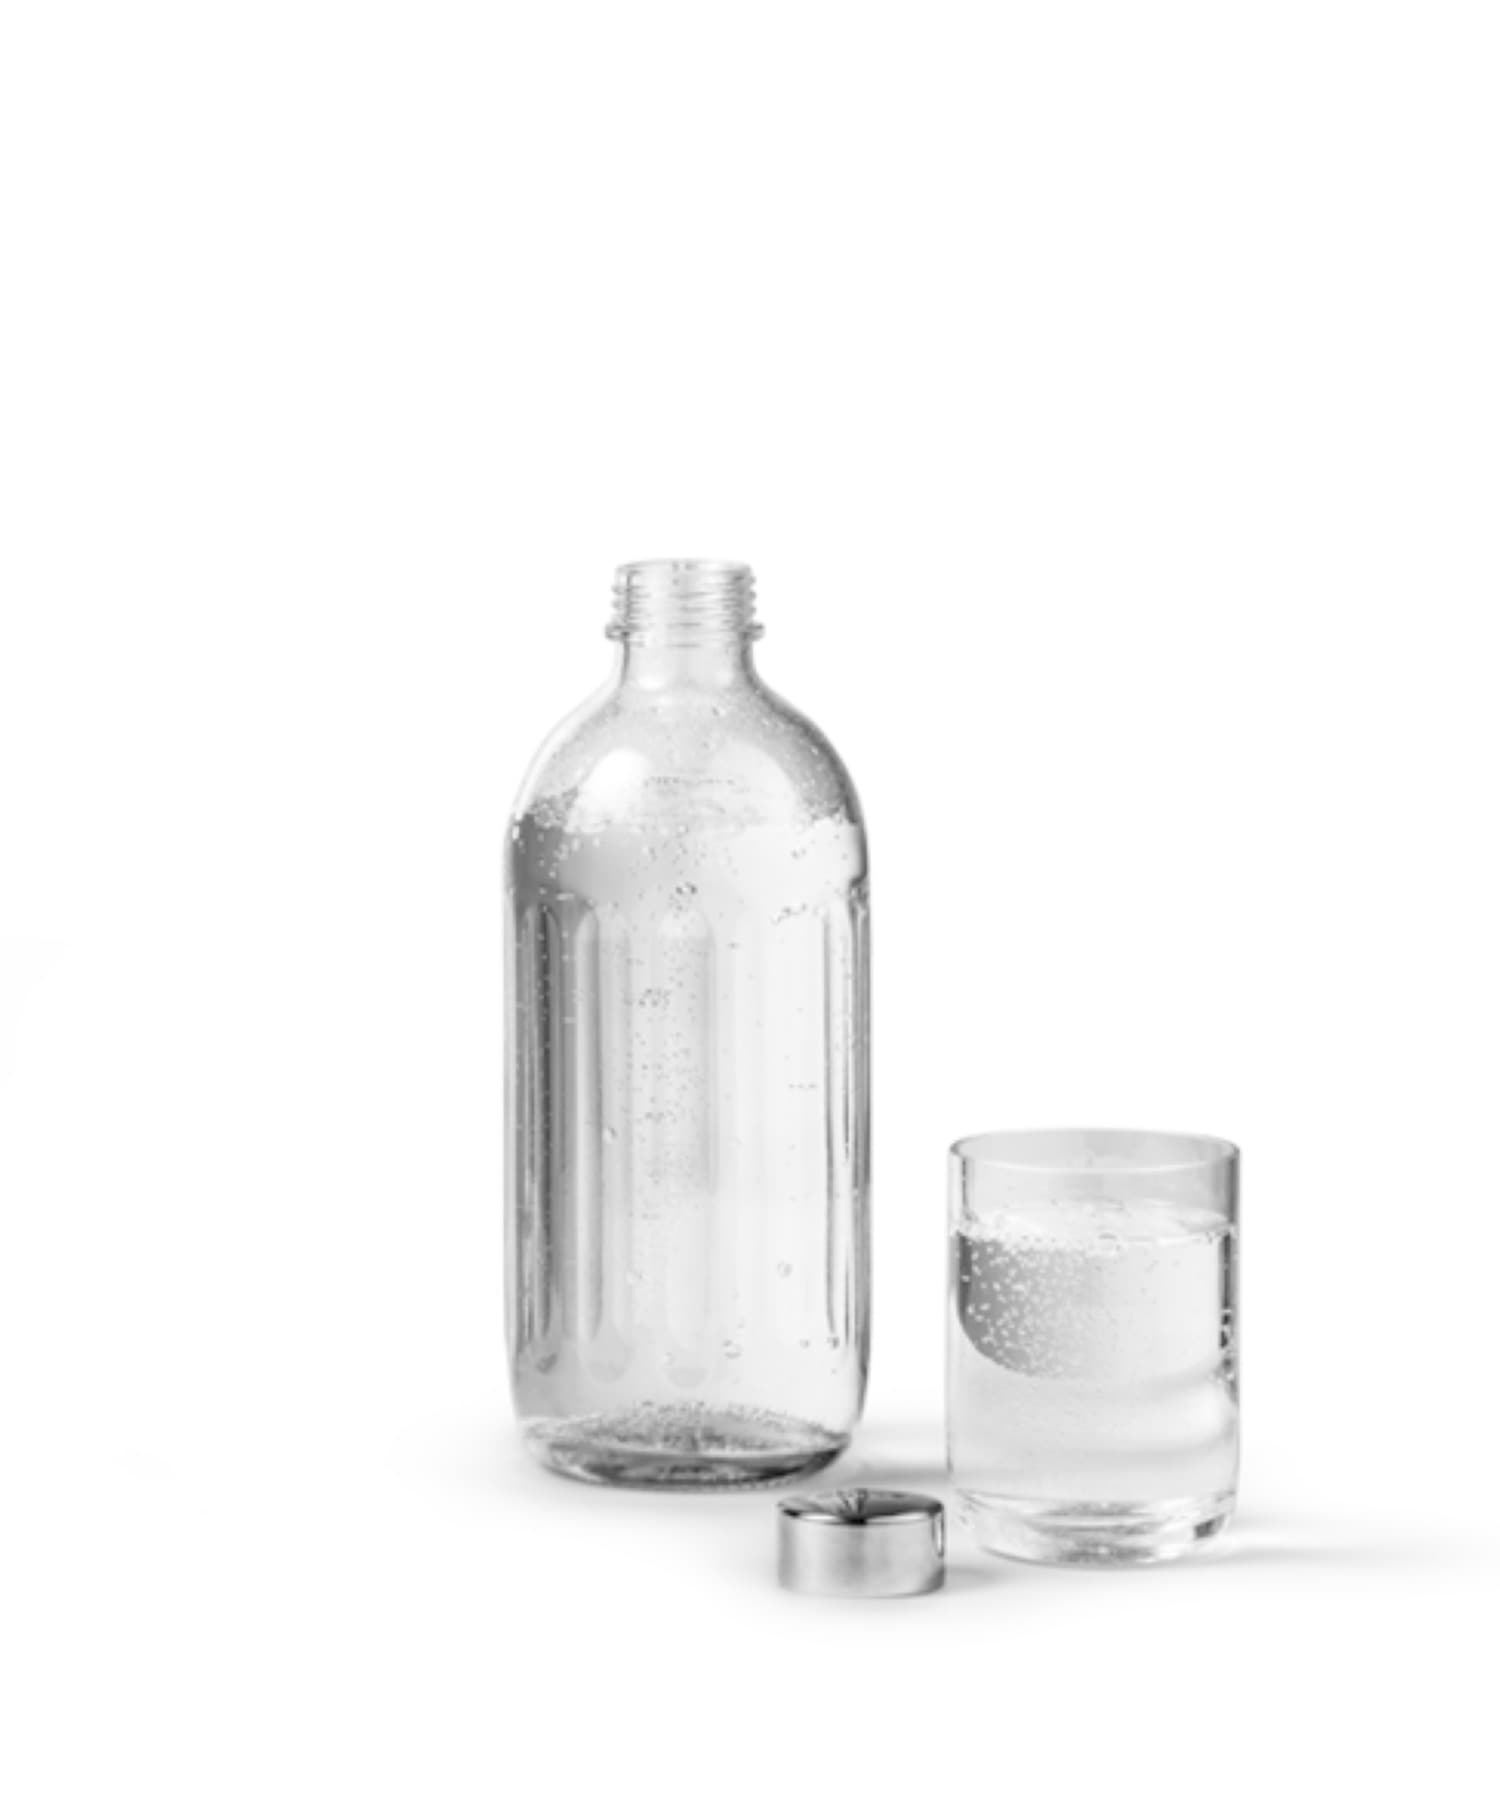 "Carbonator PRO Glass Water Bottle" 専用ガラスボトル 700ml 詳細画像 マルチカラー 1